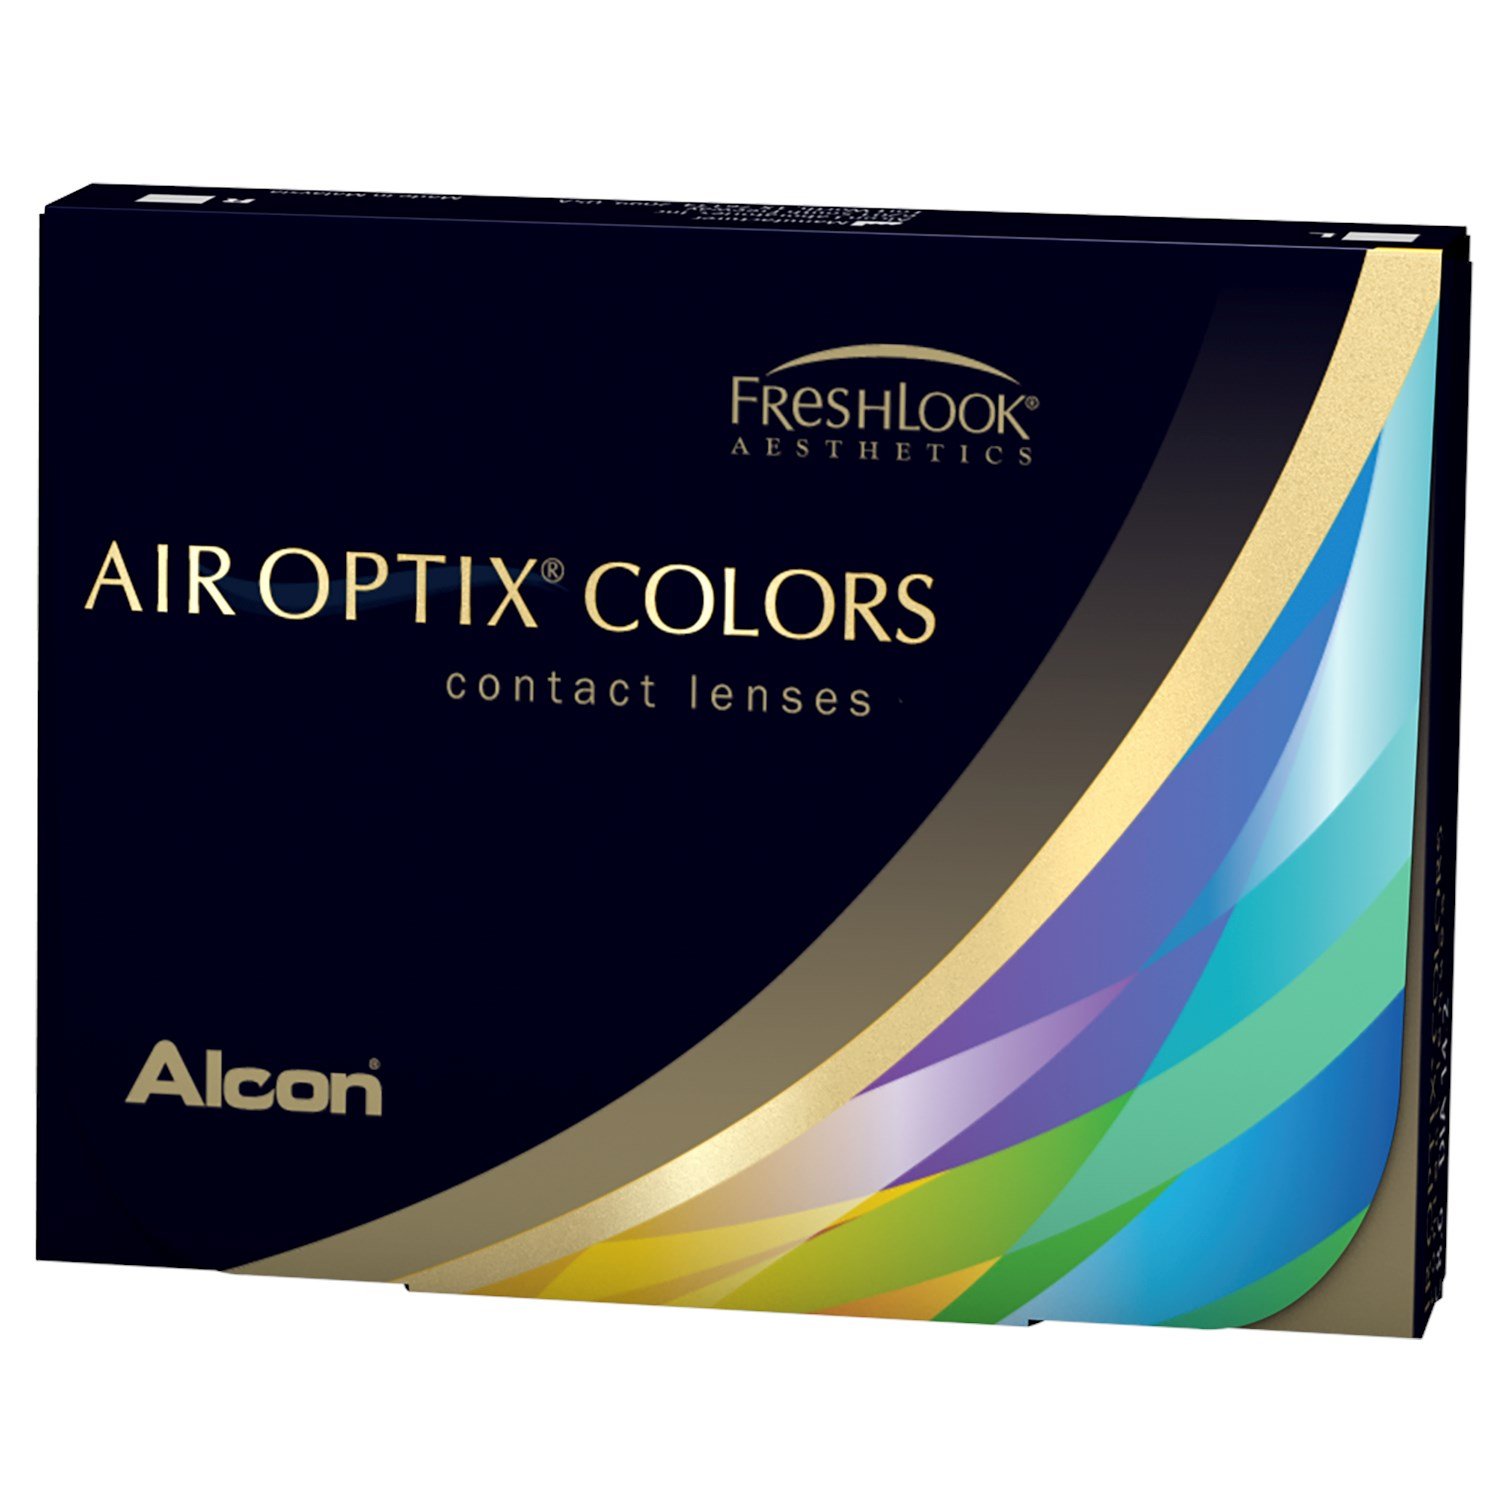 AIR OPTIX COLORS 2pk